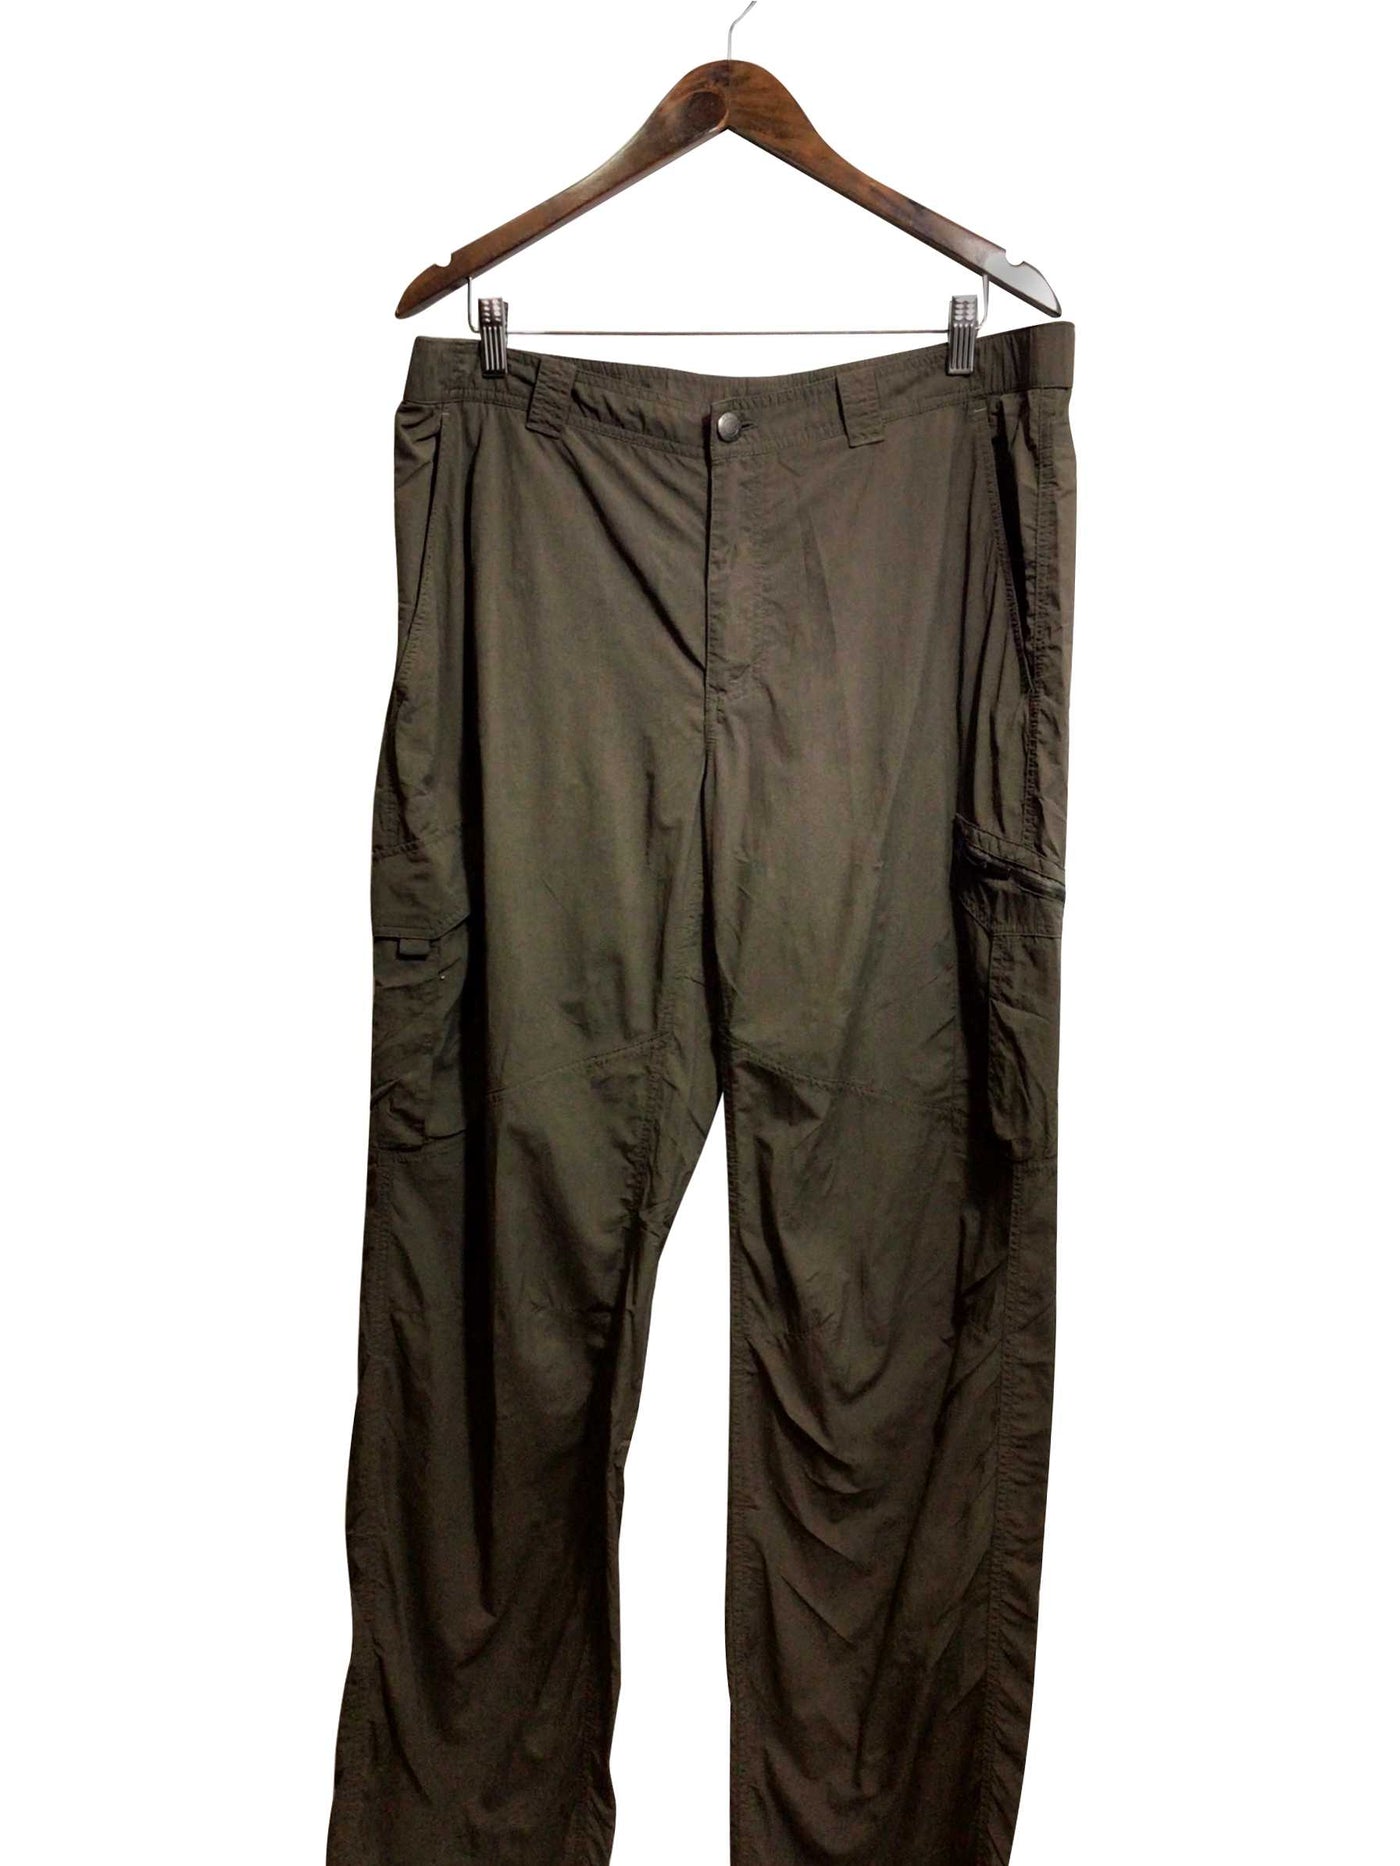 COLUMBIA Regular fit Pant in Green  -  38x32  13.99 Koop